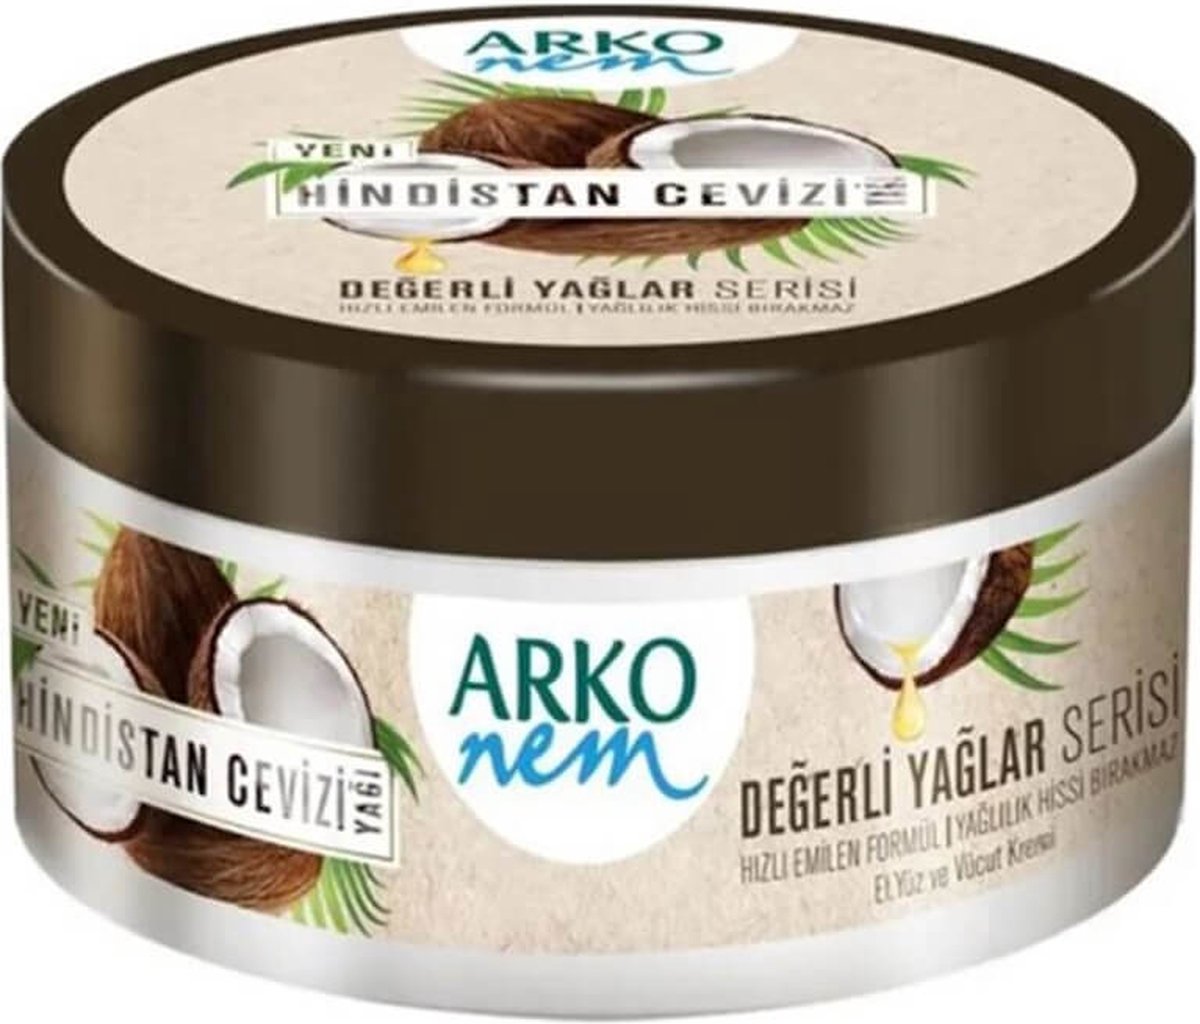 Arko nem - Kokosolie bodycrème 250 ml - 1 st.. new